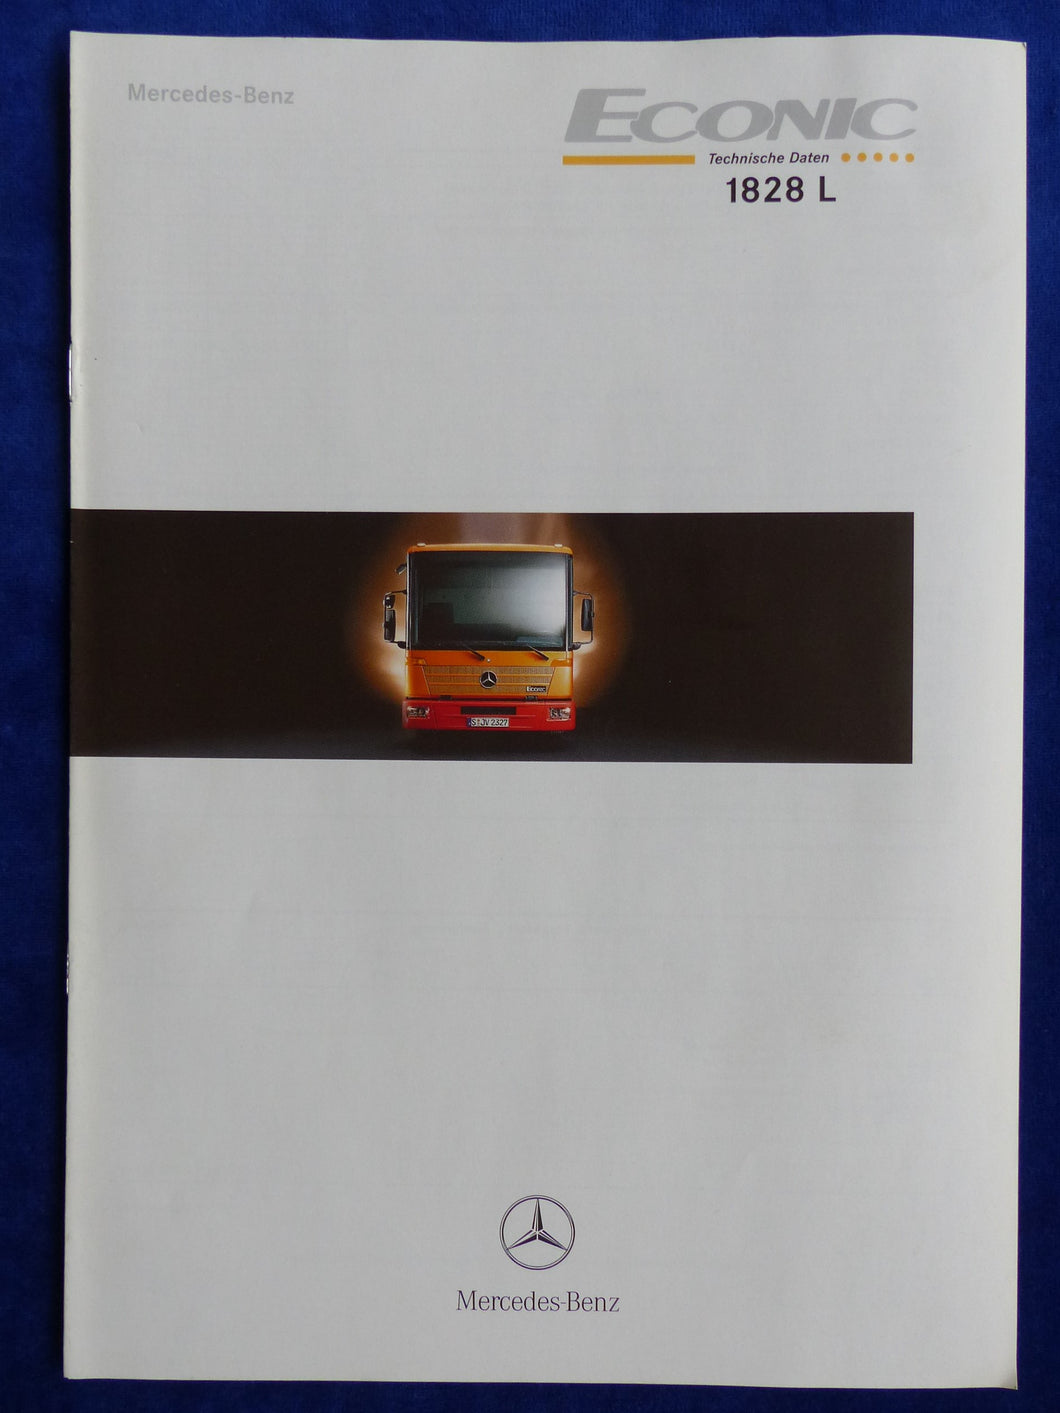 Mercedes-Benz LKW Econic 1828 L Technische Daten - Prospekt Brochure 02.2000